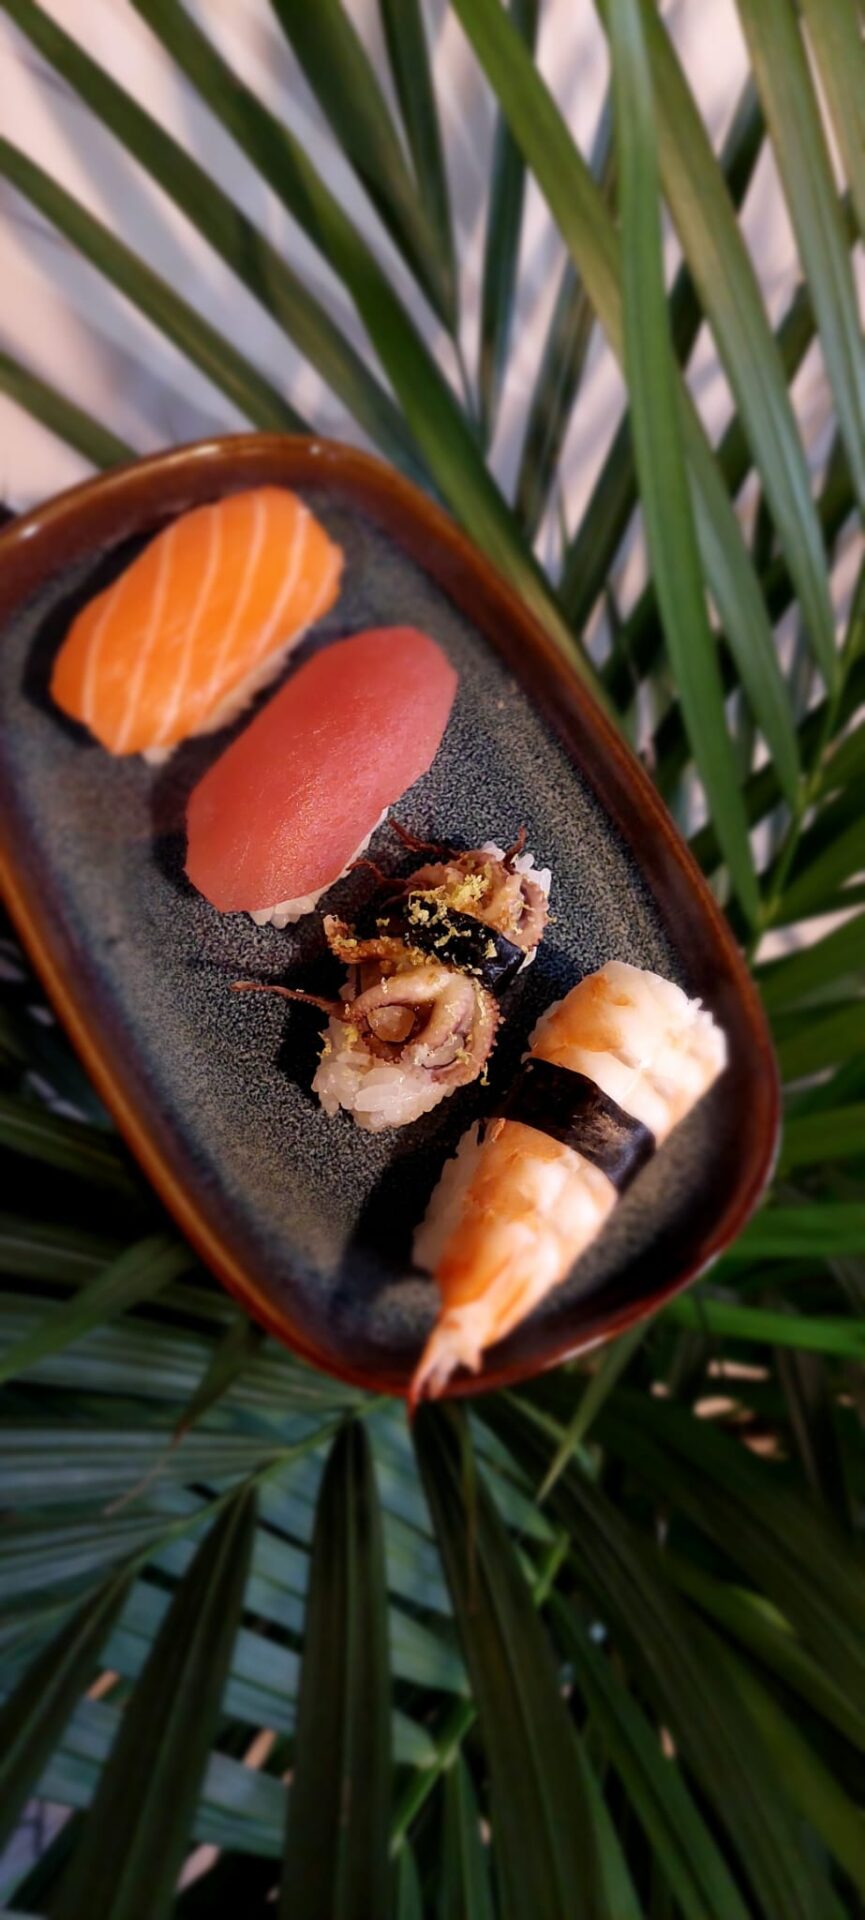 zestaw sushi